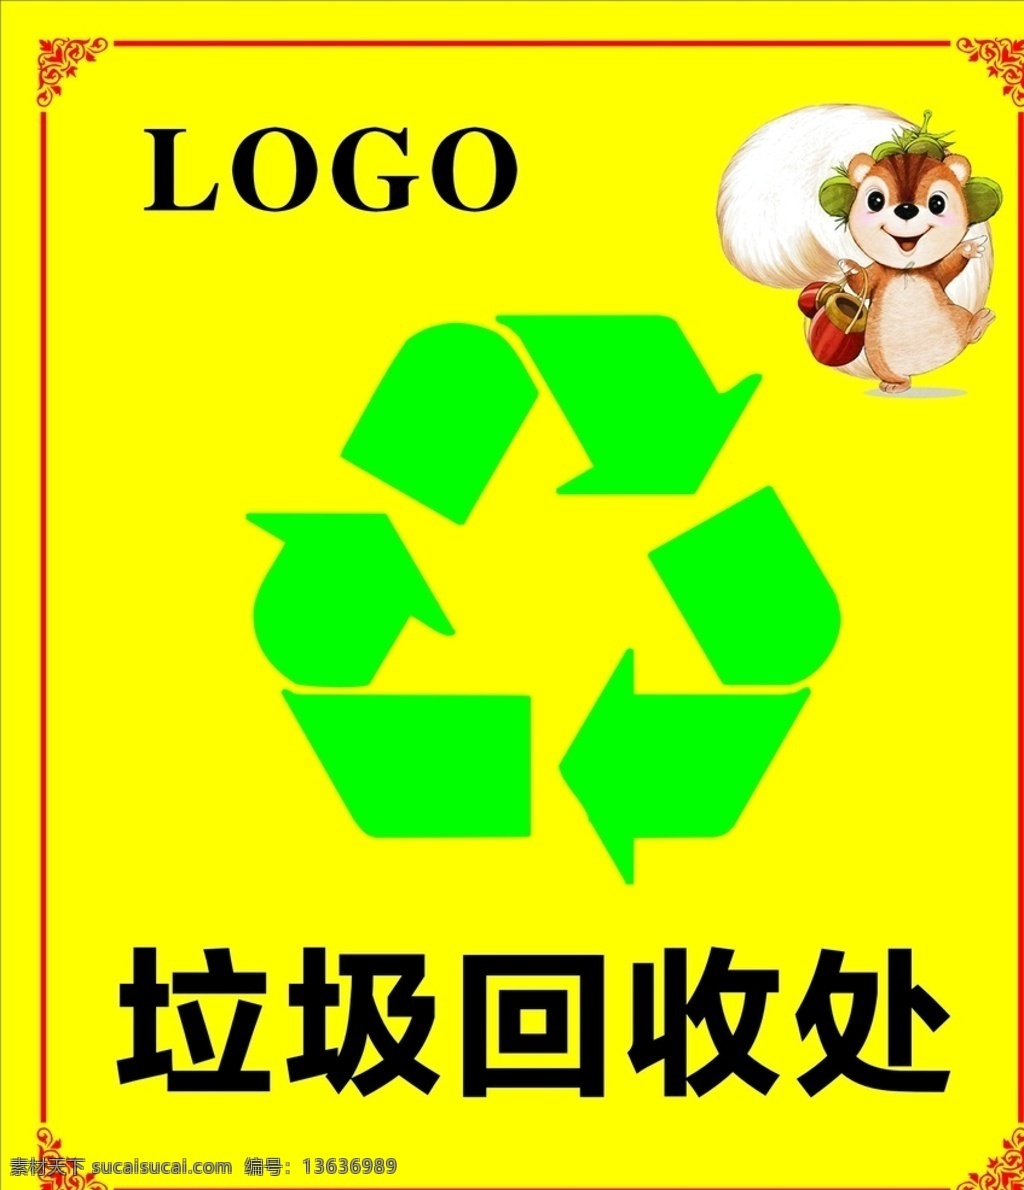 垃圾回收处 标识 可回收垃圾 回收标识 垃圾箱 垃圾堆放处